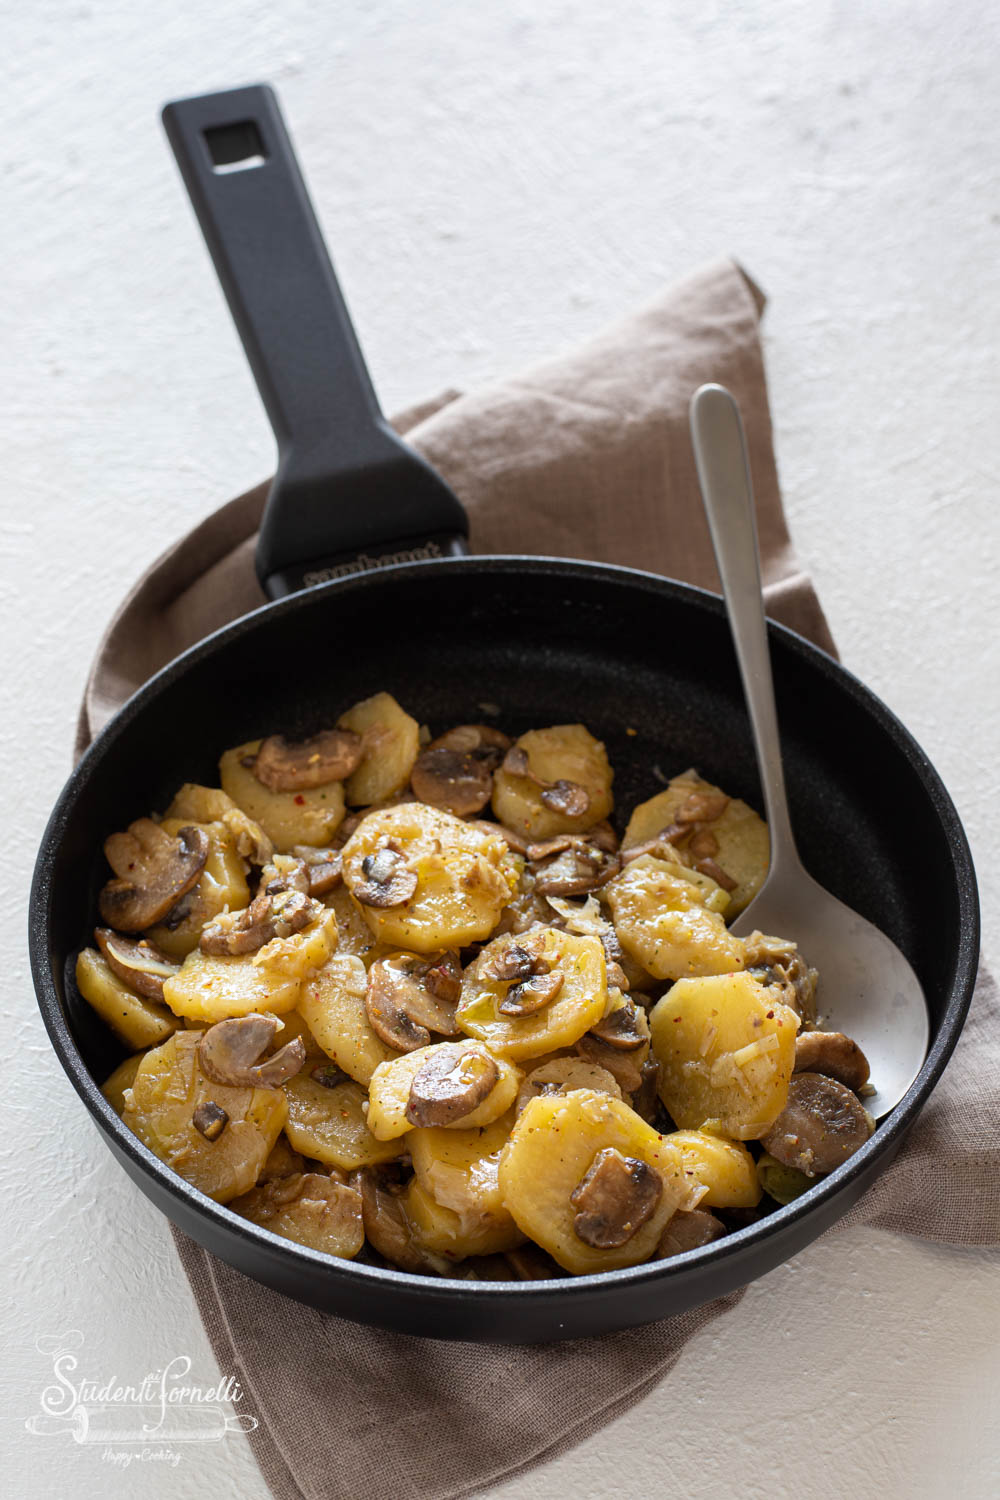 patate con funghi in padella ricetta-8749